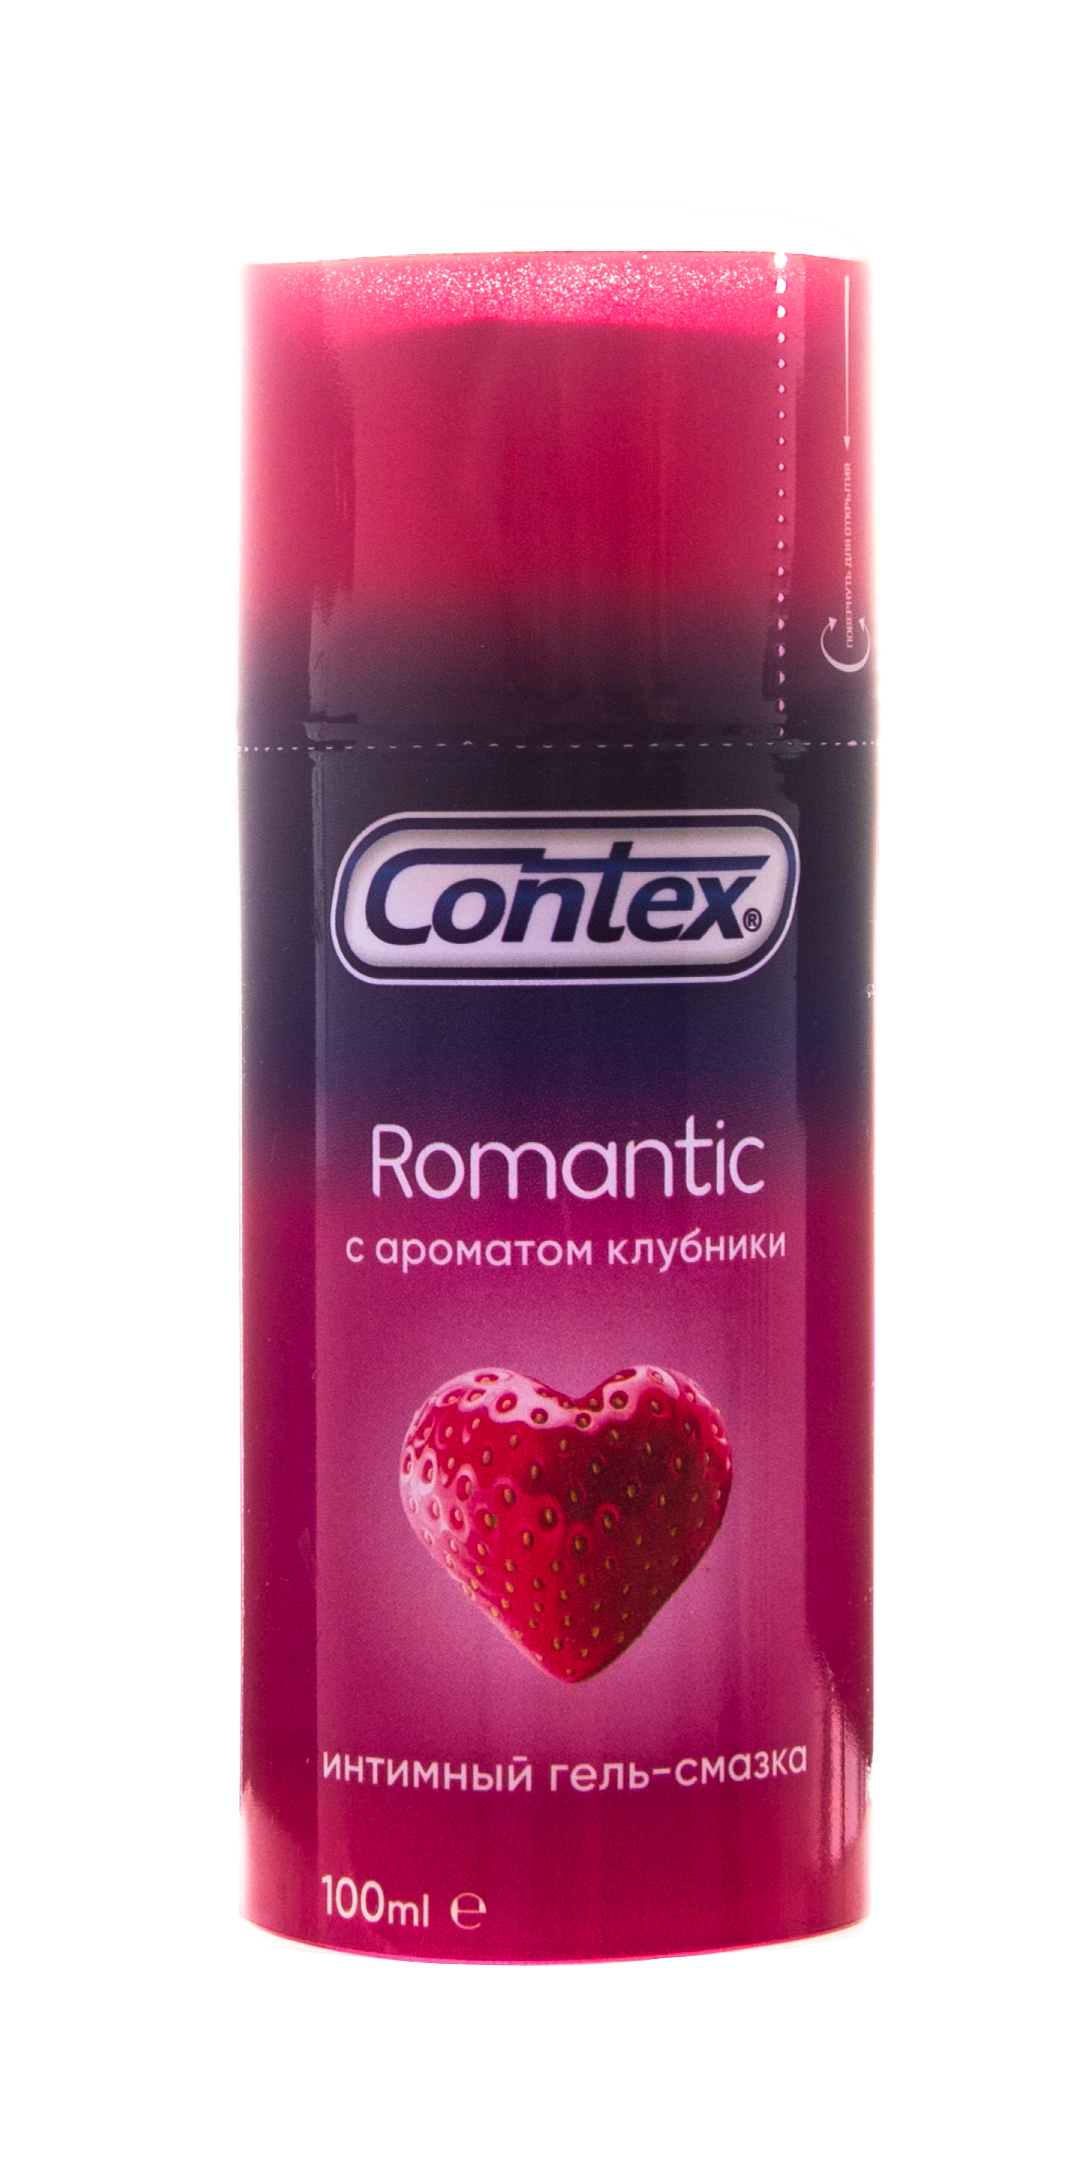 Contex Гель-смазка Romantic ароматизированный, 100 мл (Contex, Гель-смазка)